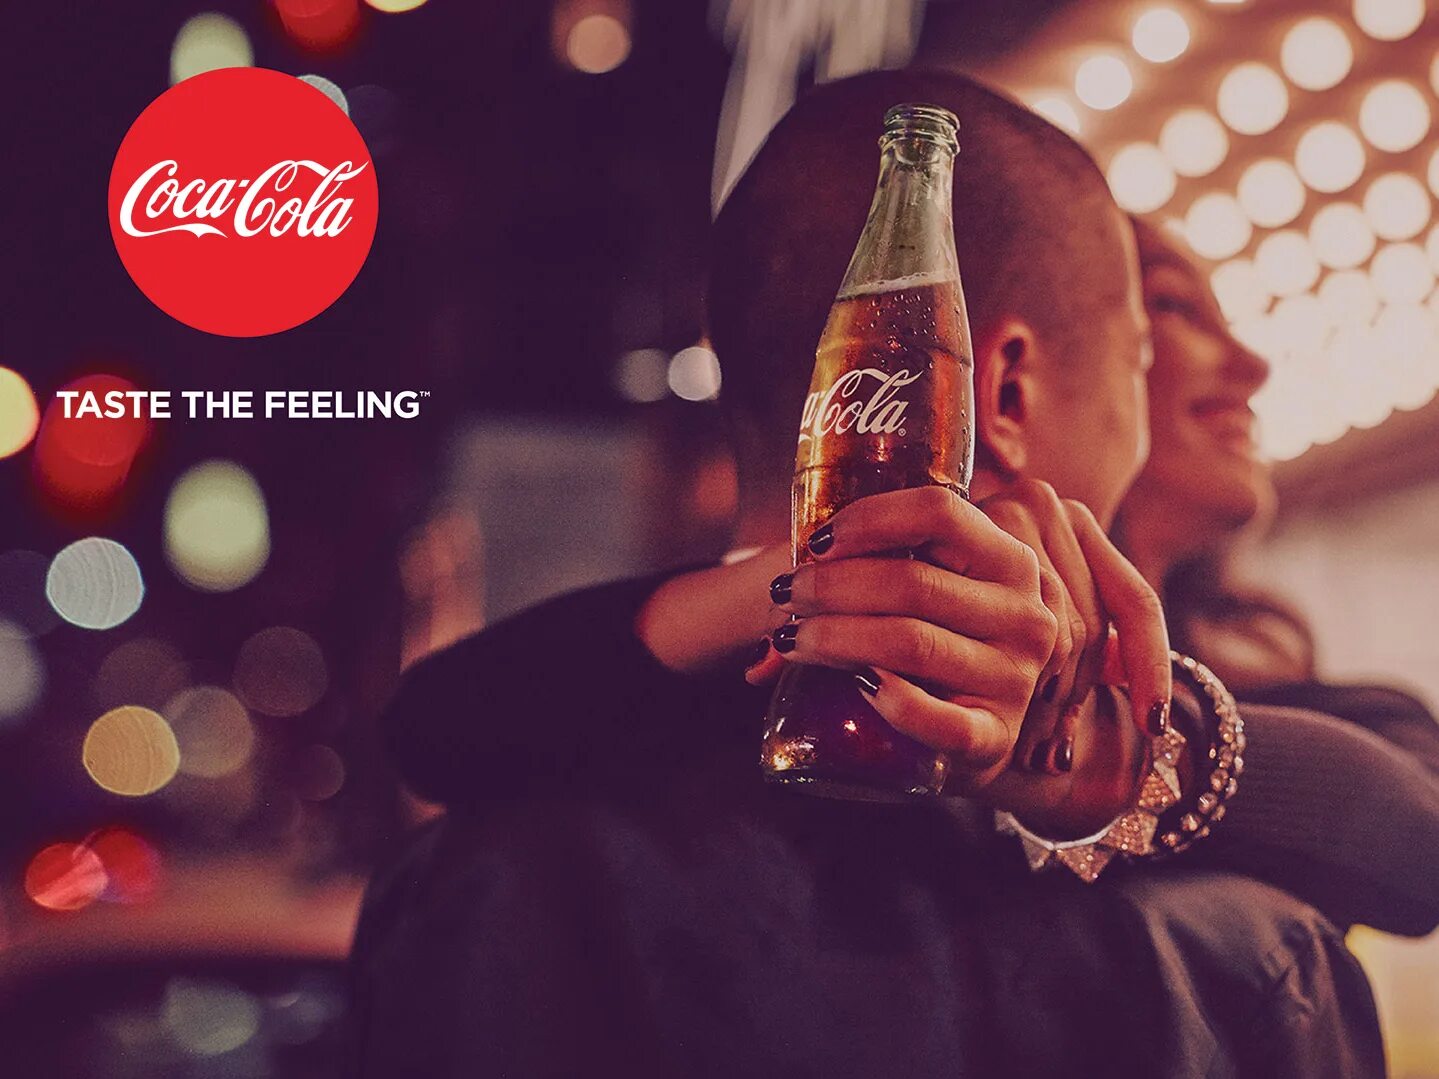 Реклама колы. Coca Cola реклама. Реклама Кока колы. Coca Cola с человеком. Taste the feeling